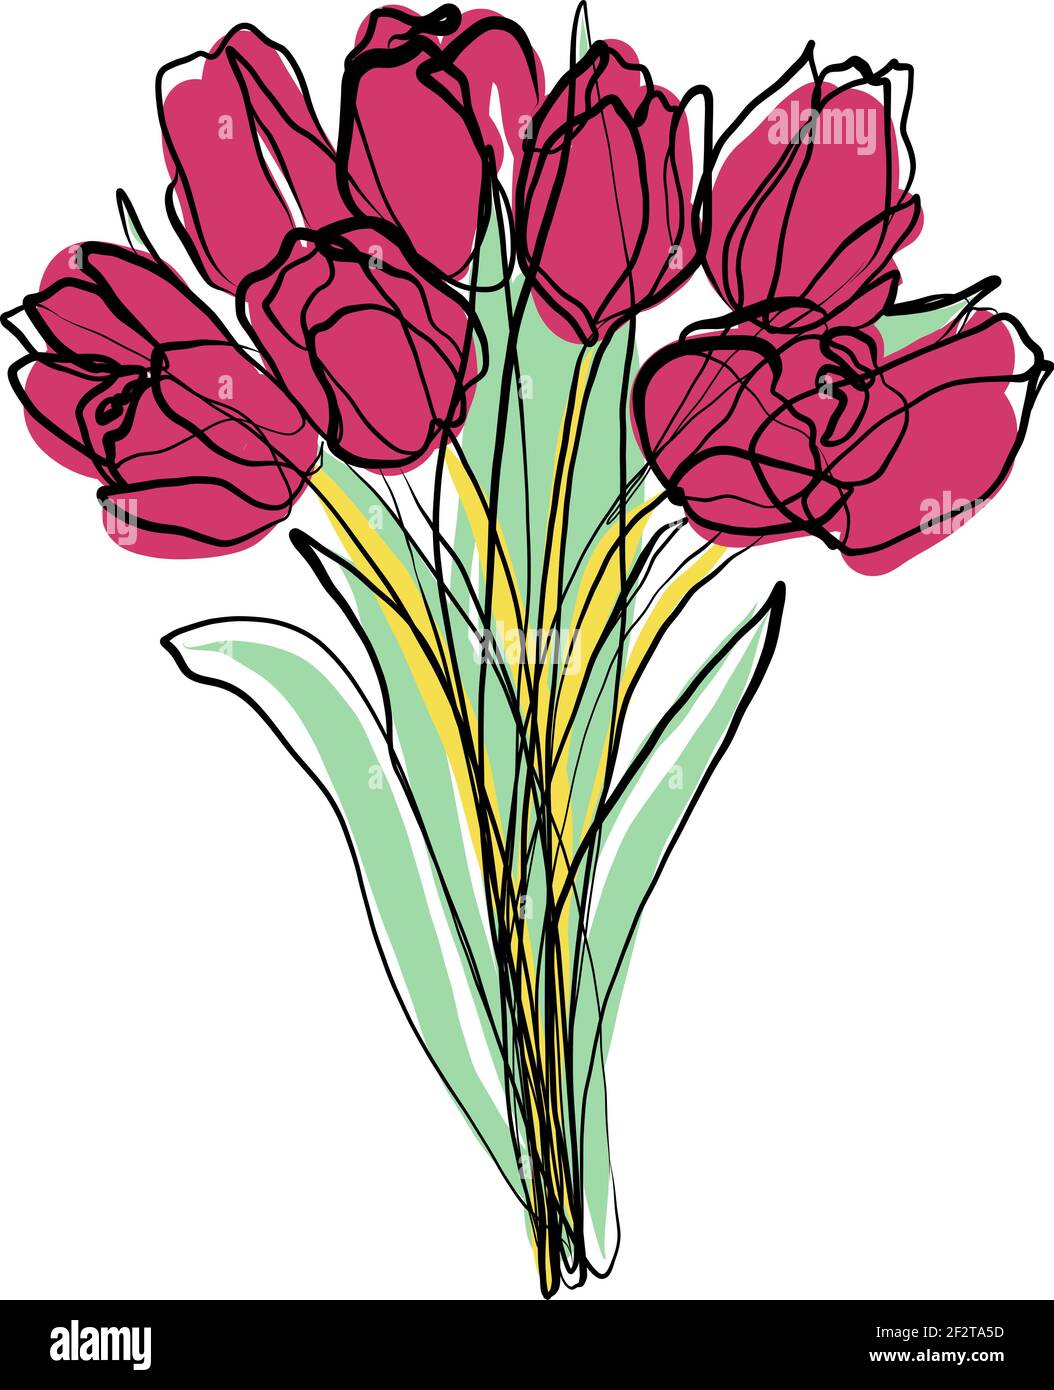 Tulpen Bouquet Illustration, Blüte Vektor Skizze, Doodle. Blumen eine ununterbrochene Linienzeichnung, Farbflecken. Eine Frühlingsgrüße. Stock Vektor